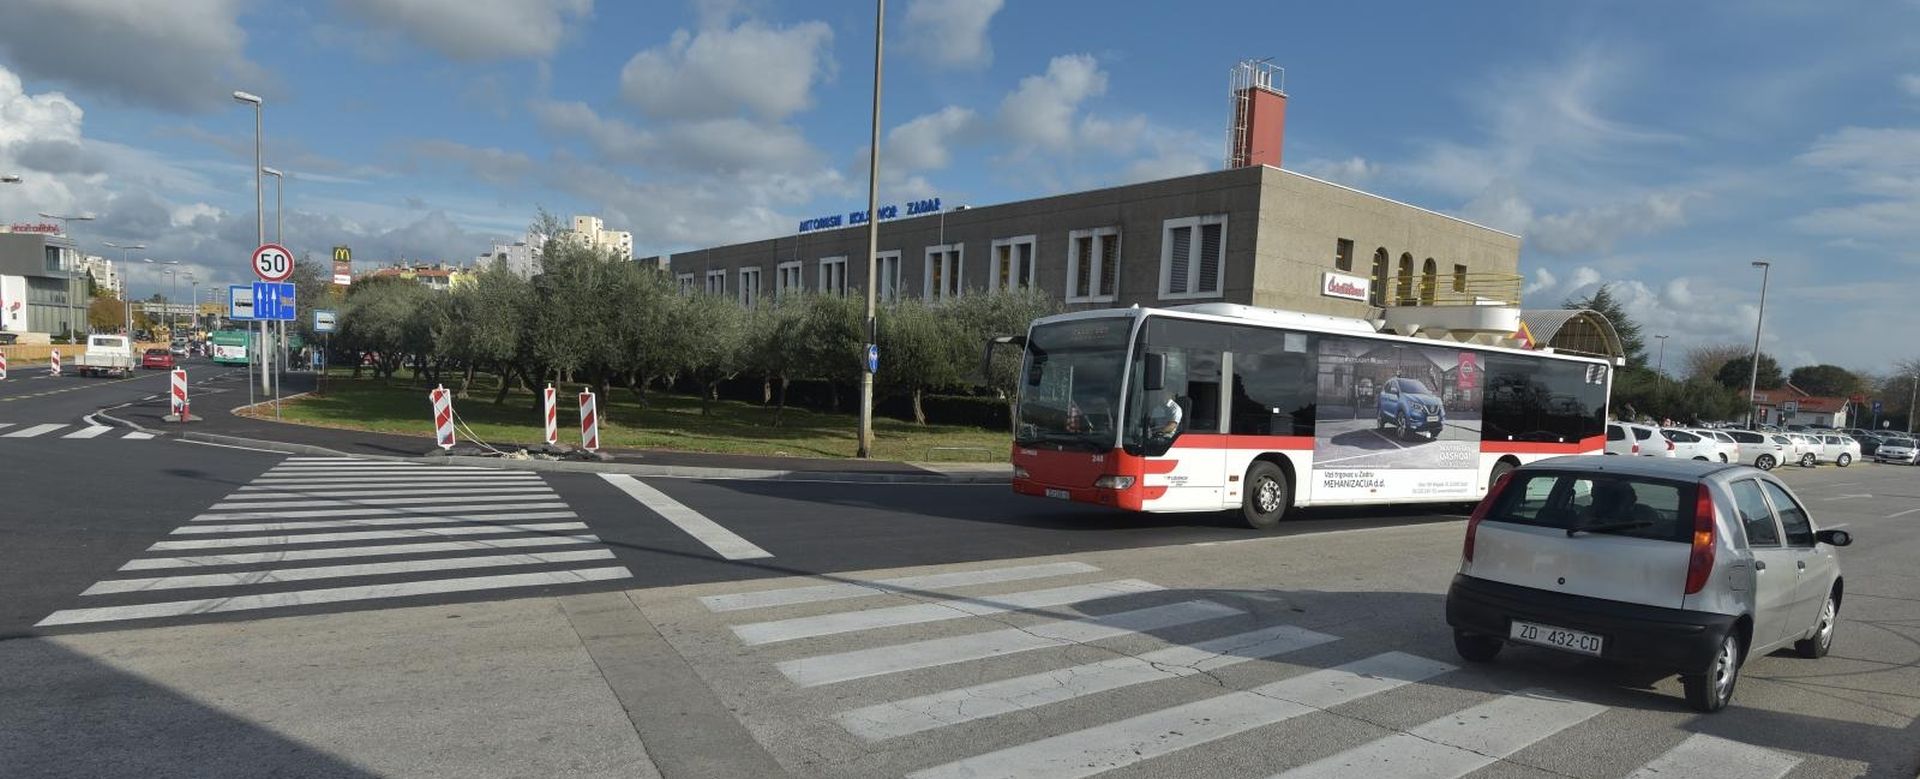 05.11.2018., Zadar - Na raskrizju kod zadarskog autobusnog kolodvora osvanula je dvodjelna zebra koja zbunjuje pjesake. 

Photo: Dino Stanin/PIXSELL